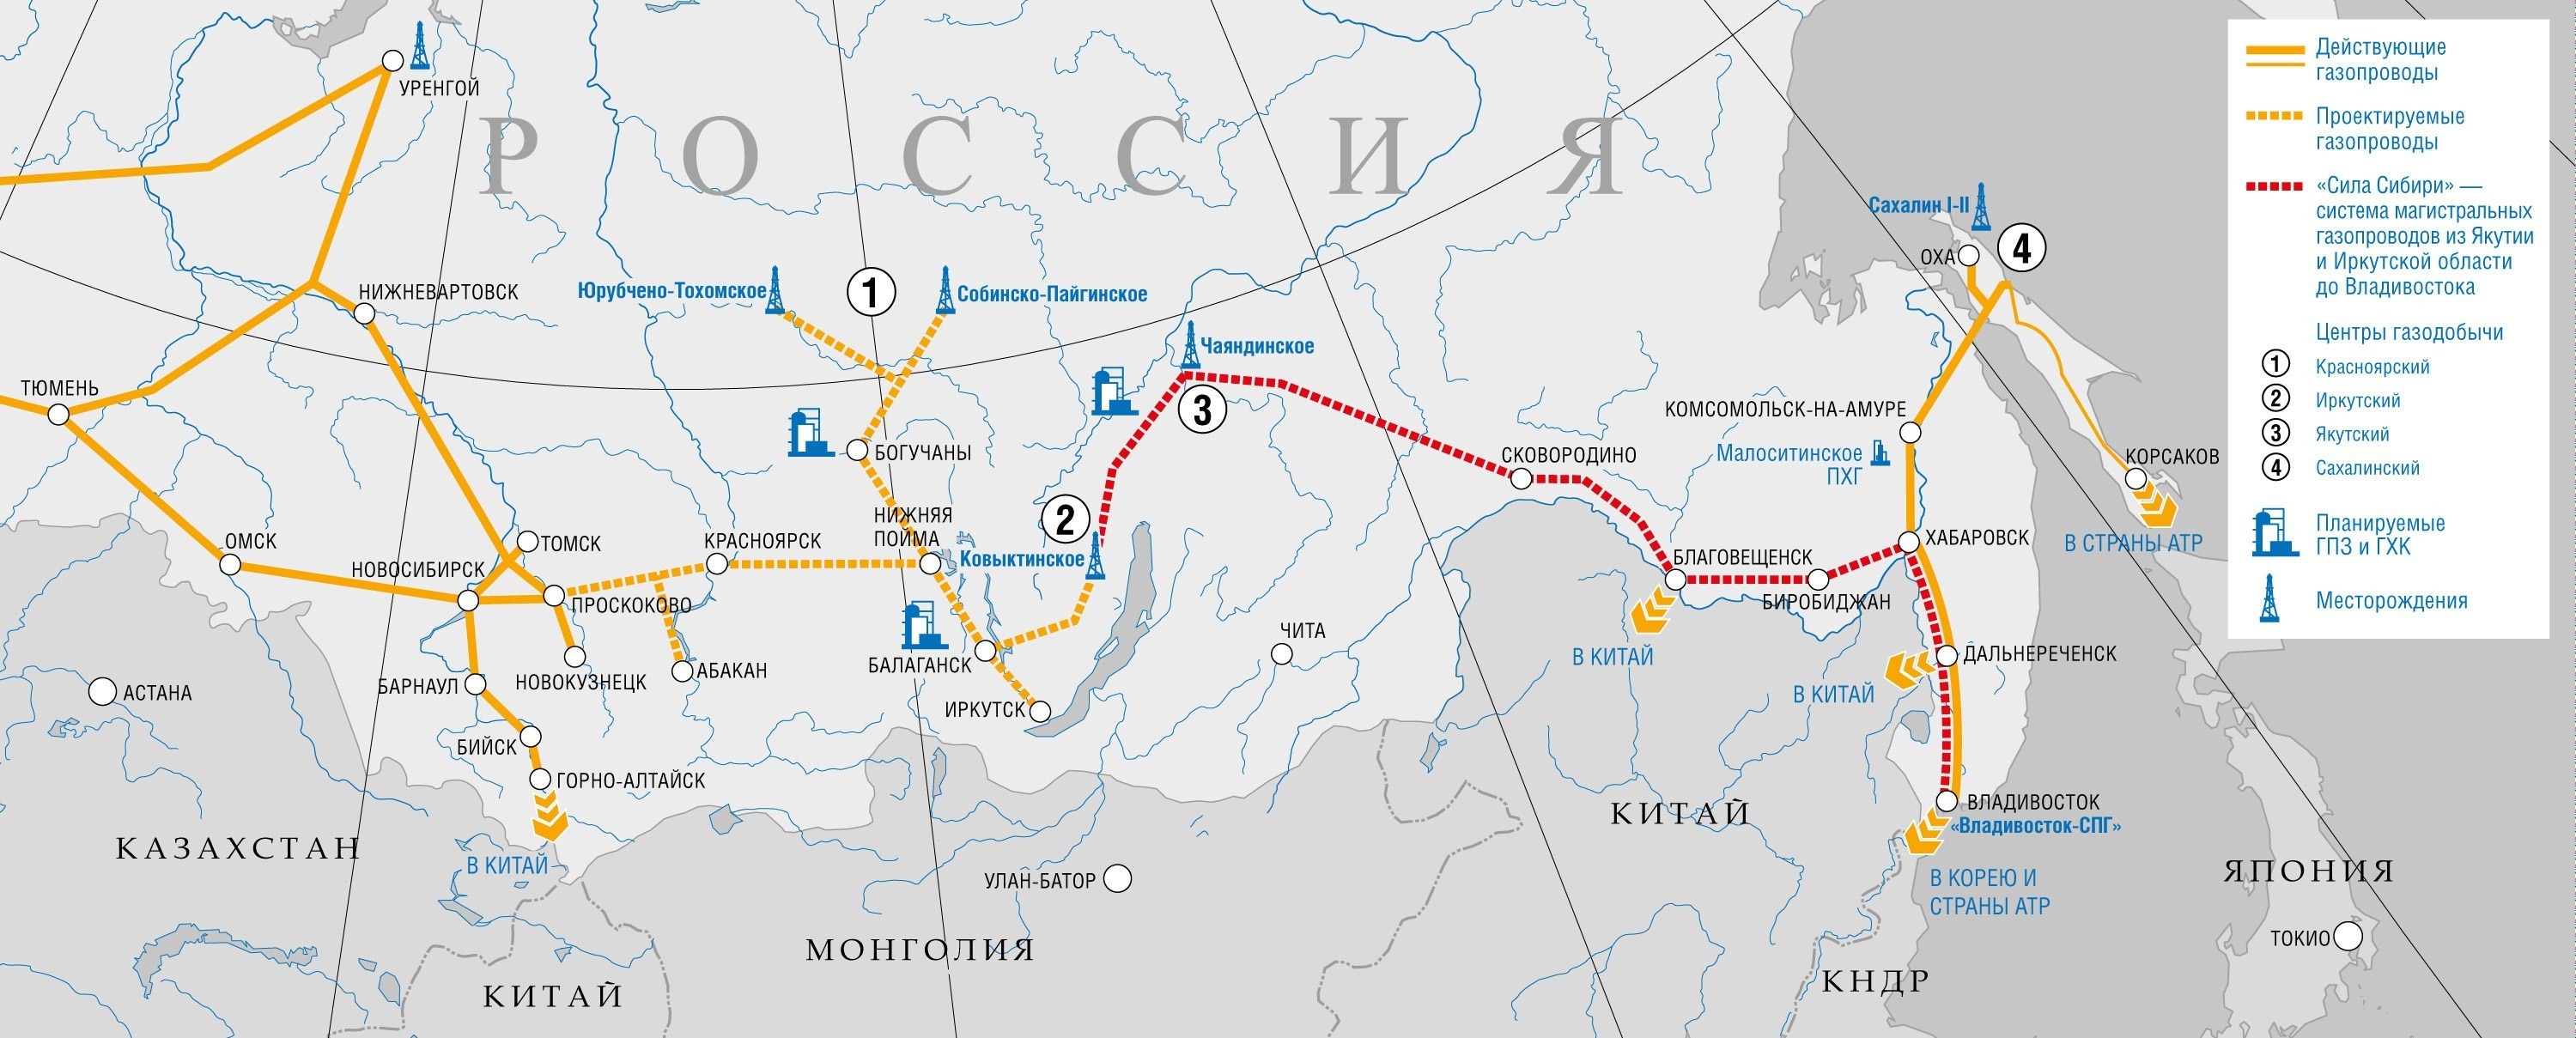 Газпром получит аванс в $25 млрд до начала поставок газа в Китай